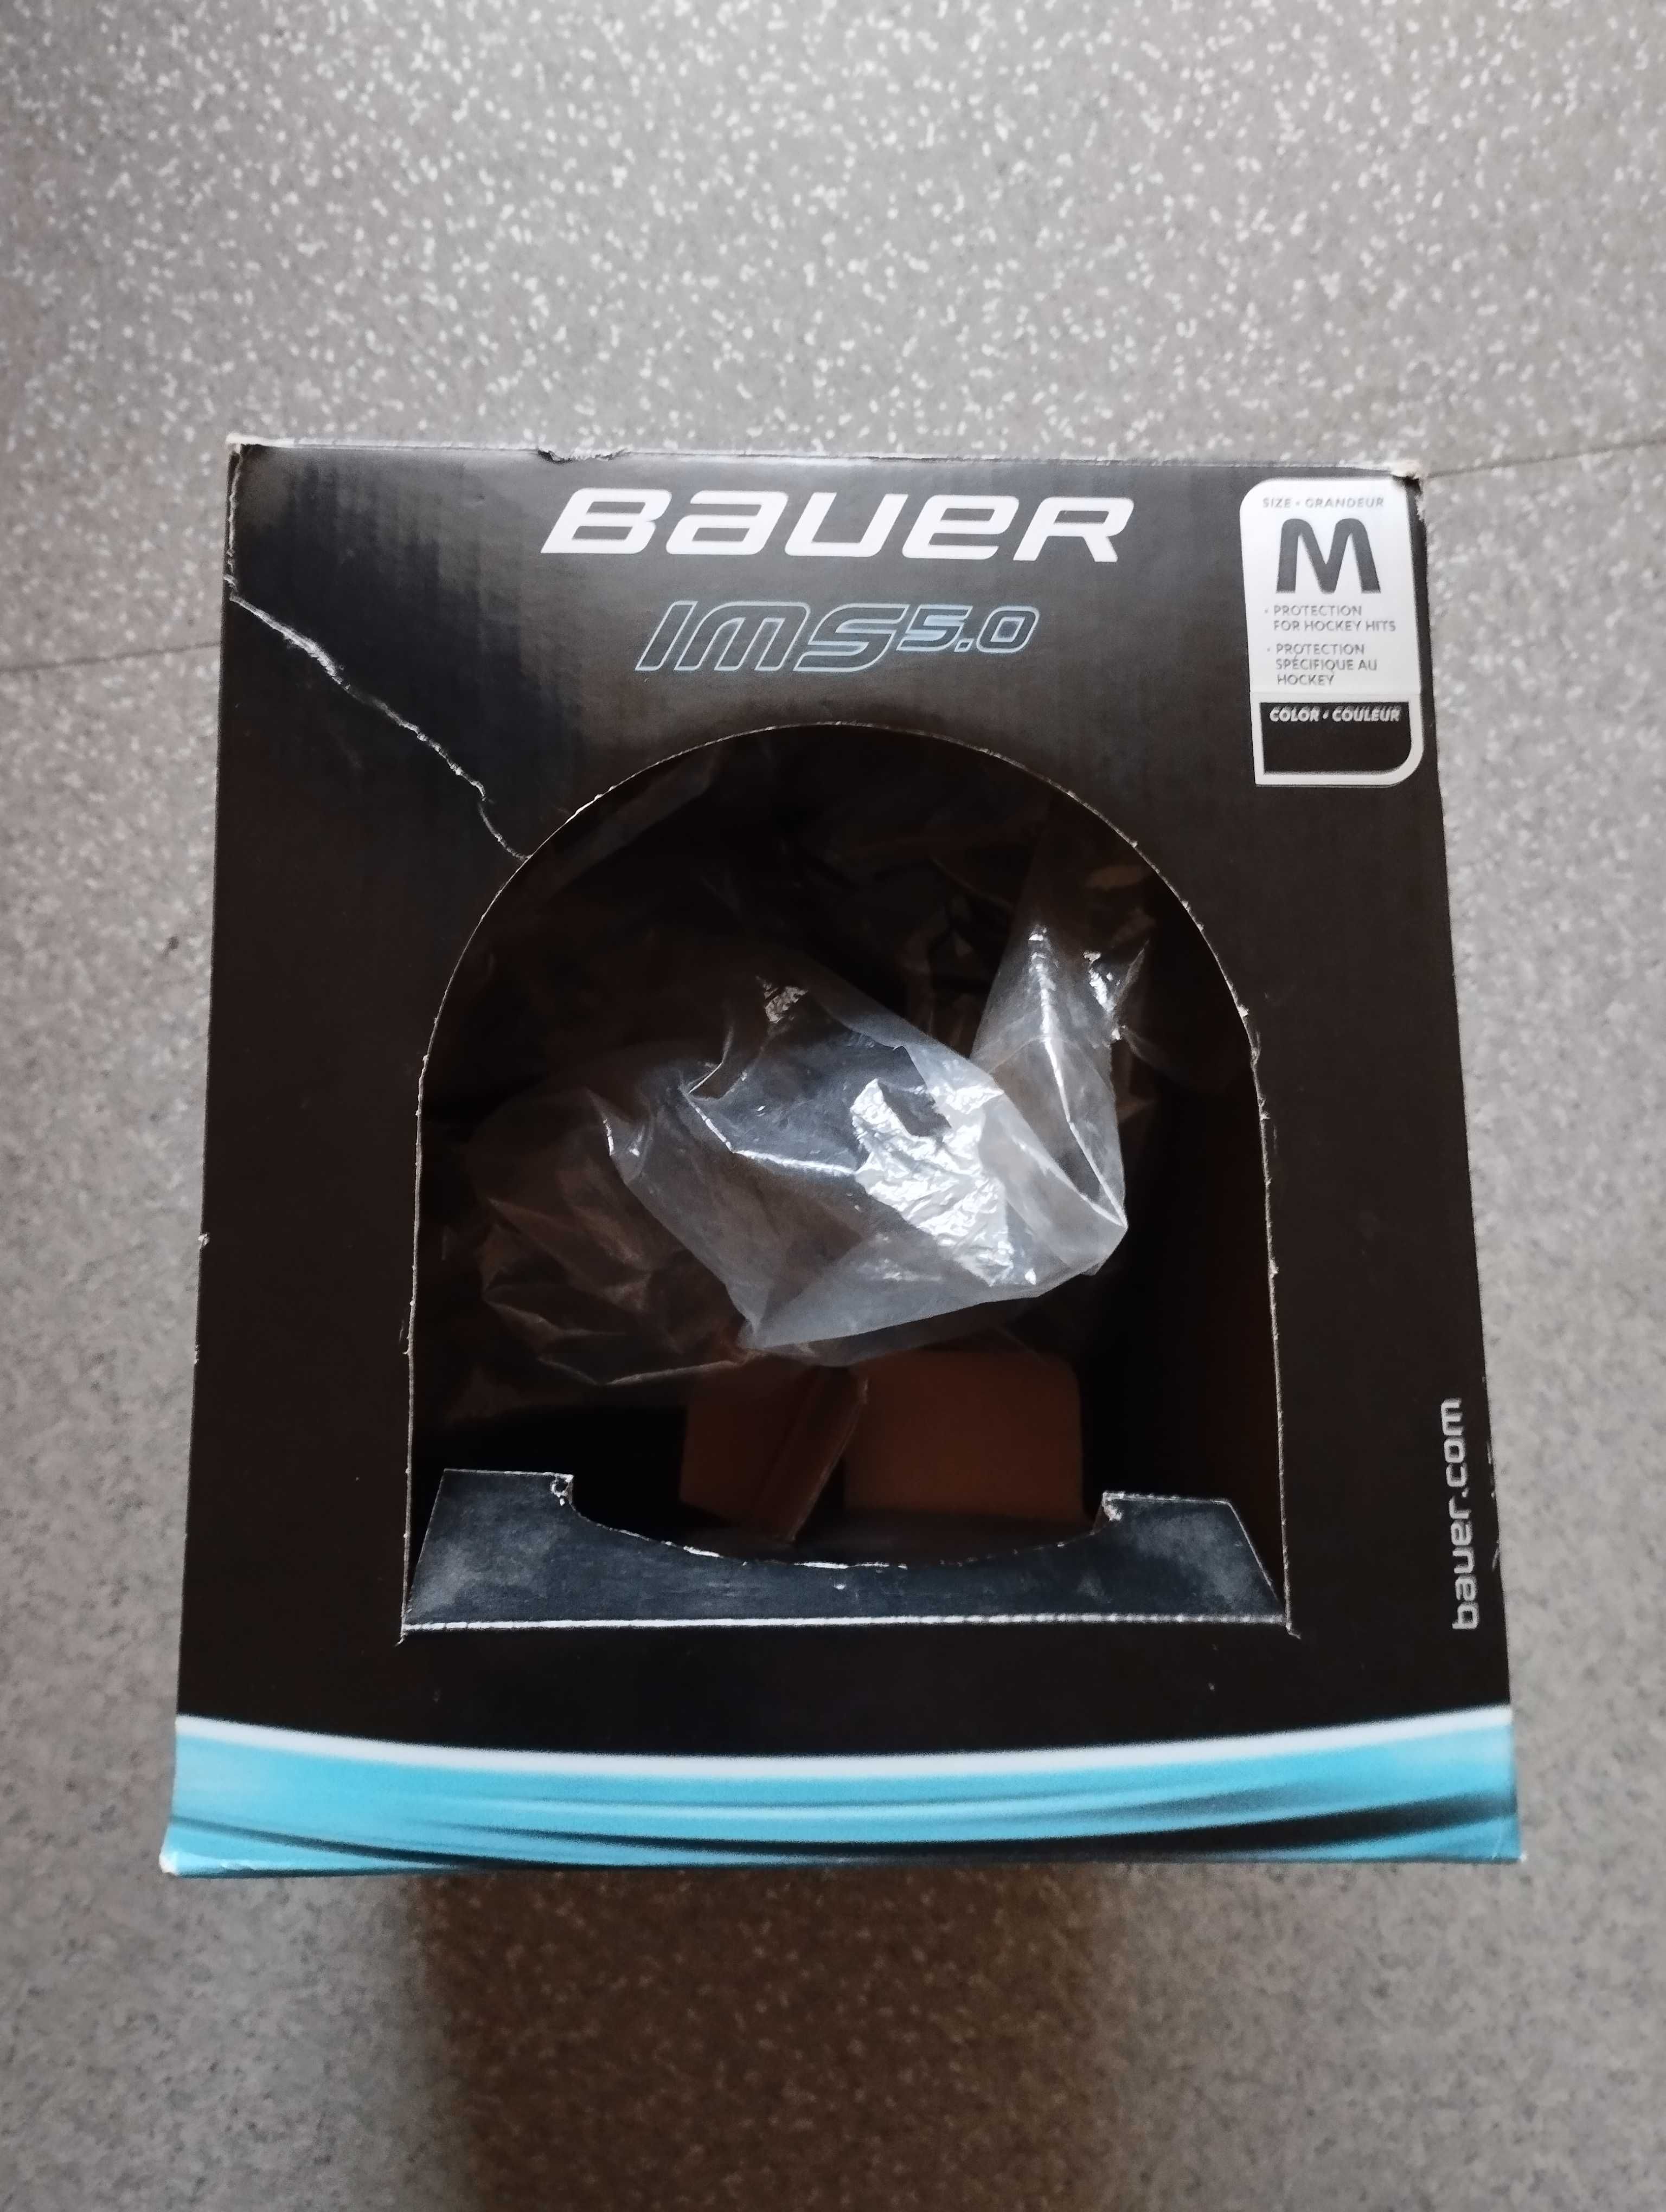 Kask hokejowy Bauer IMS 5.0 rozmiar Medium